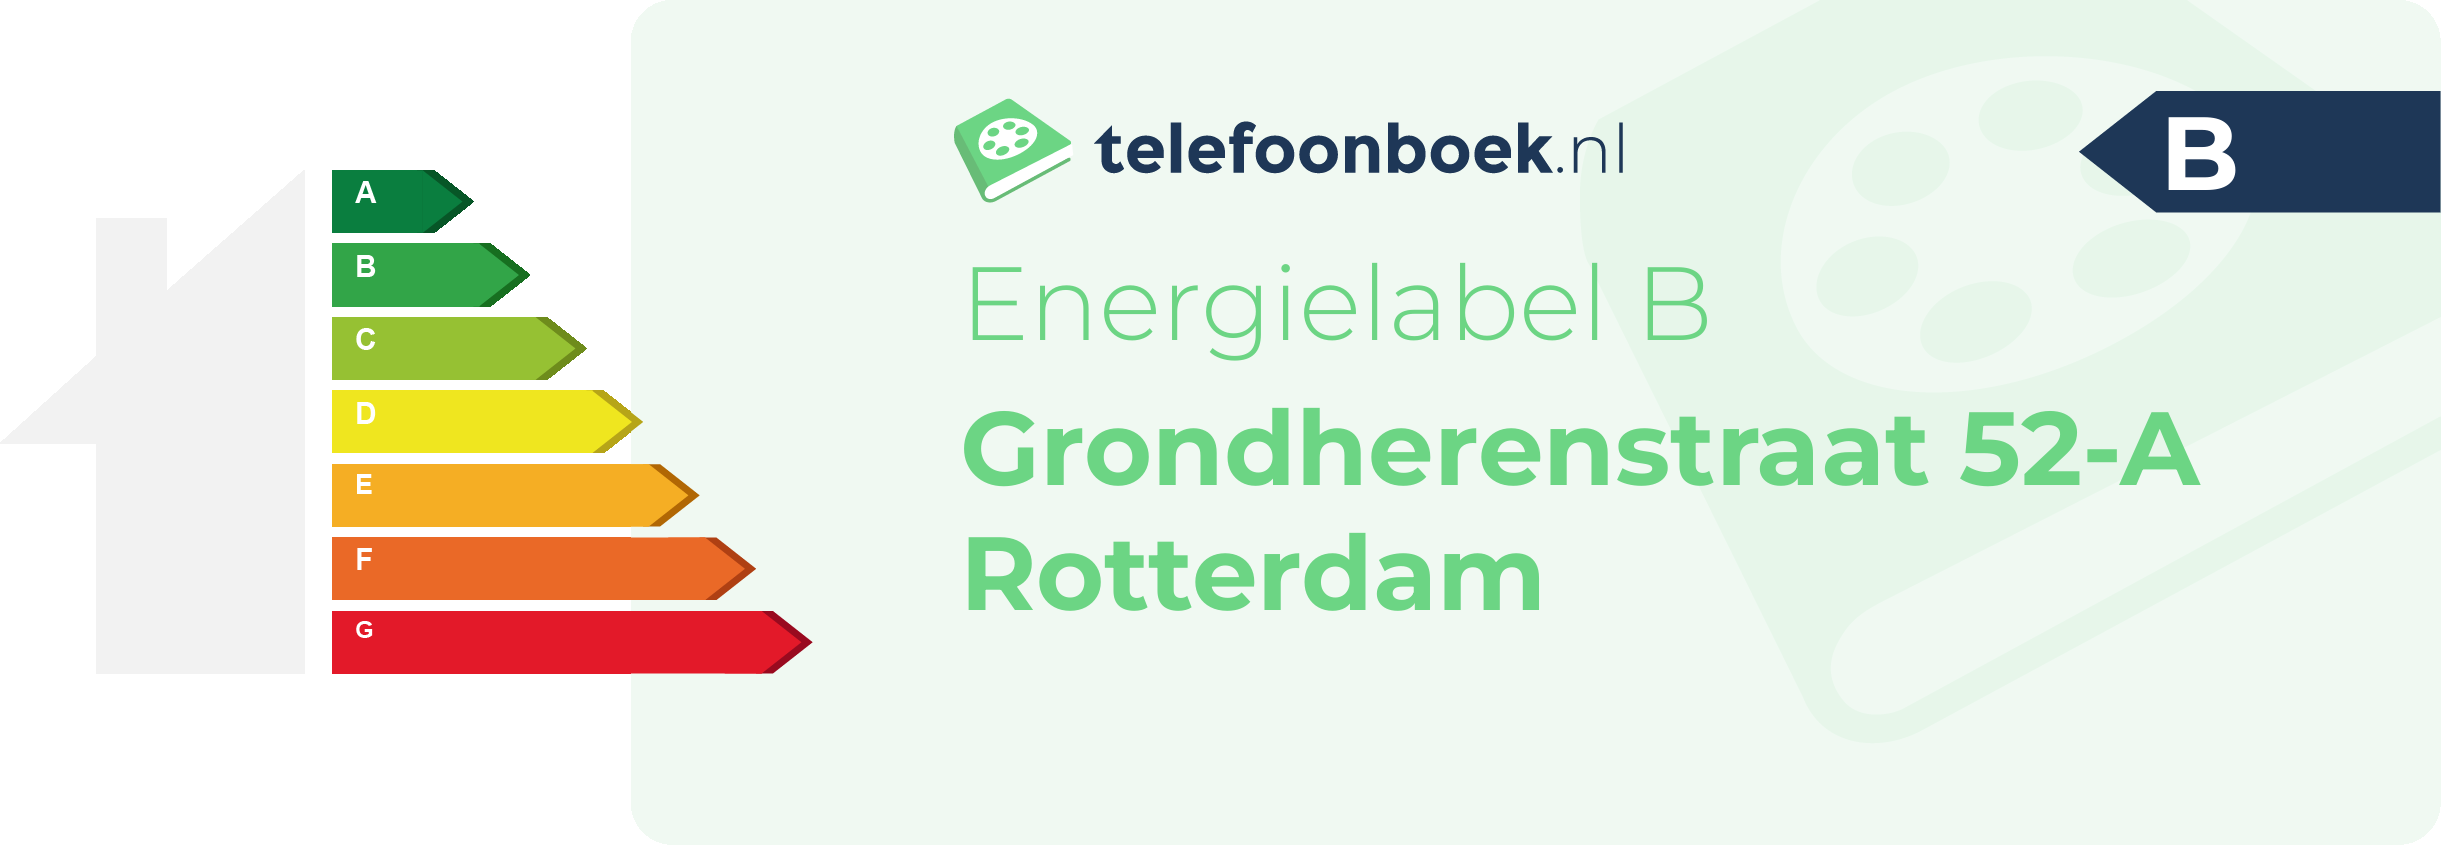 Energielabel Grondherenstraat 52-A Rotterdam